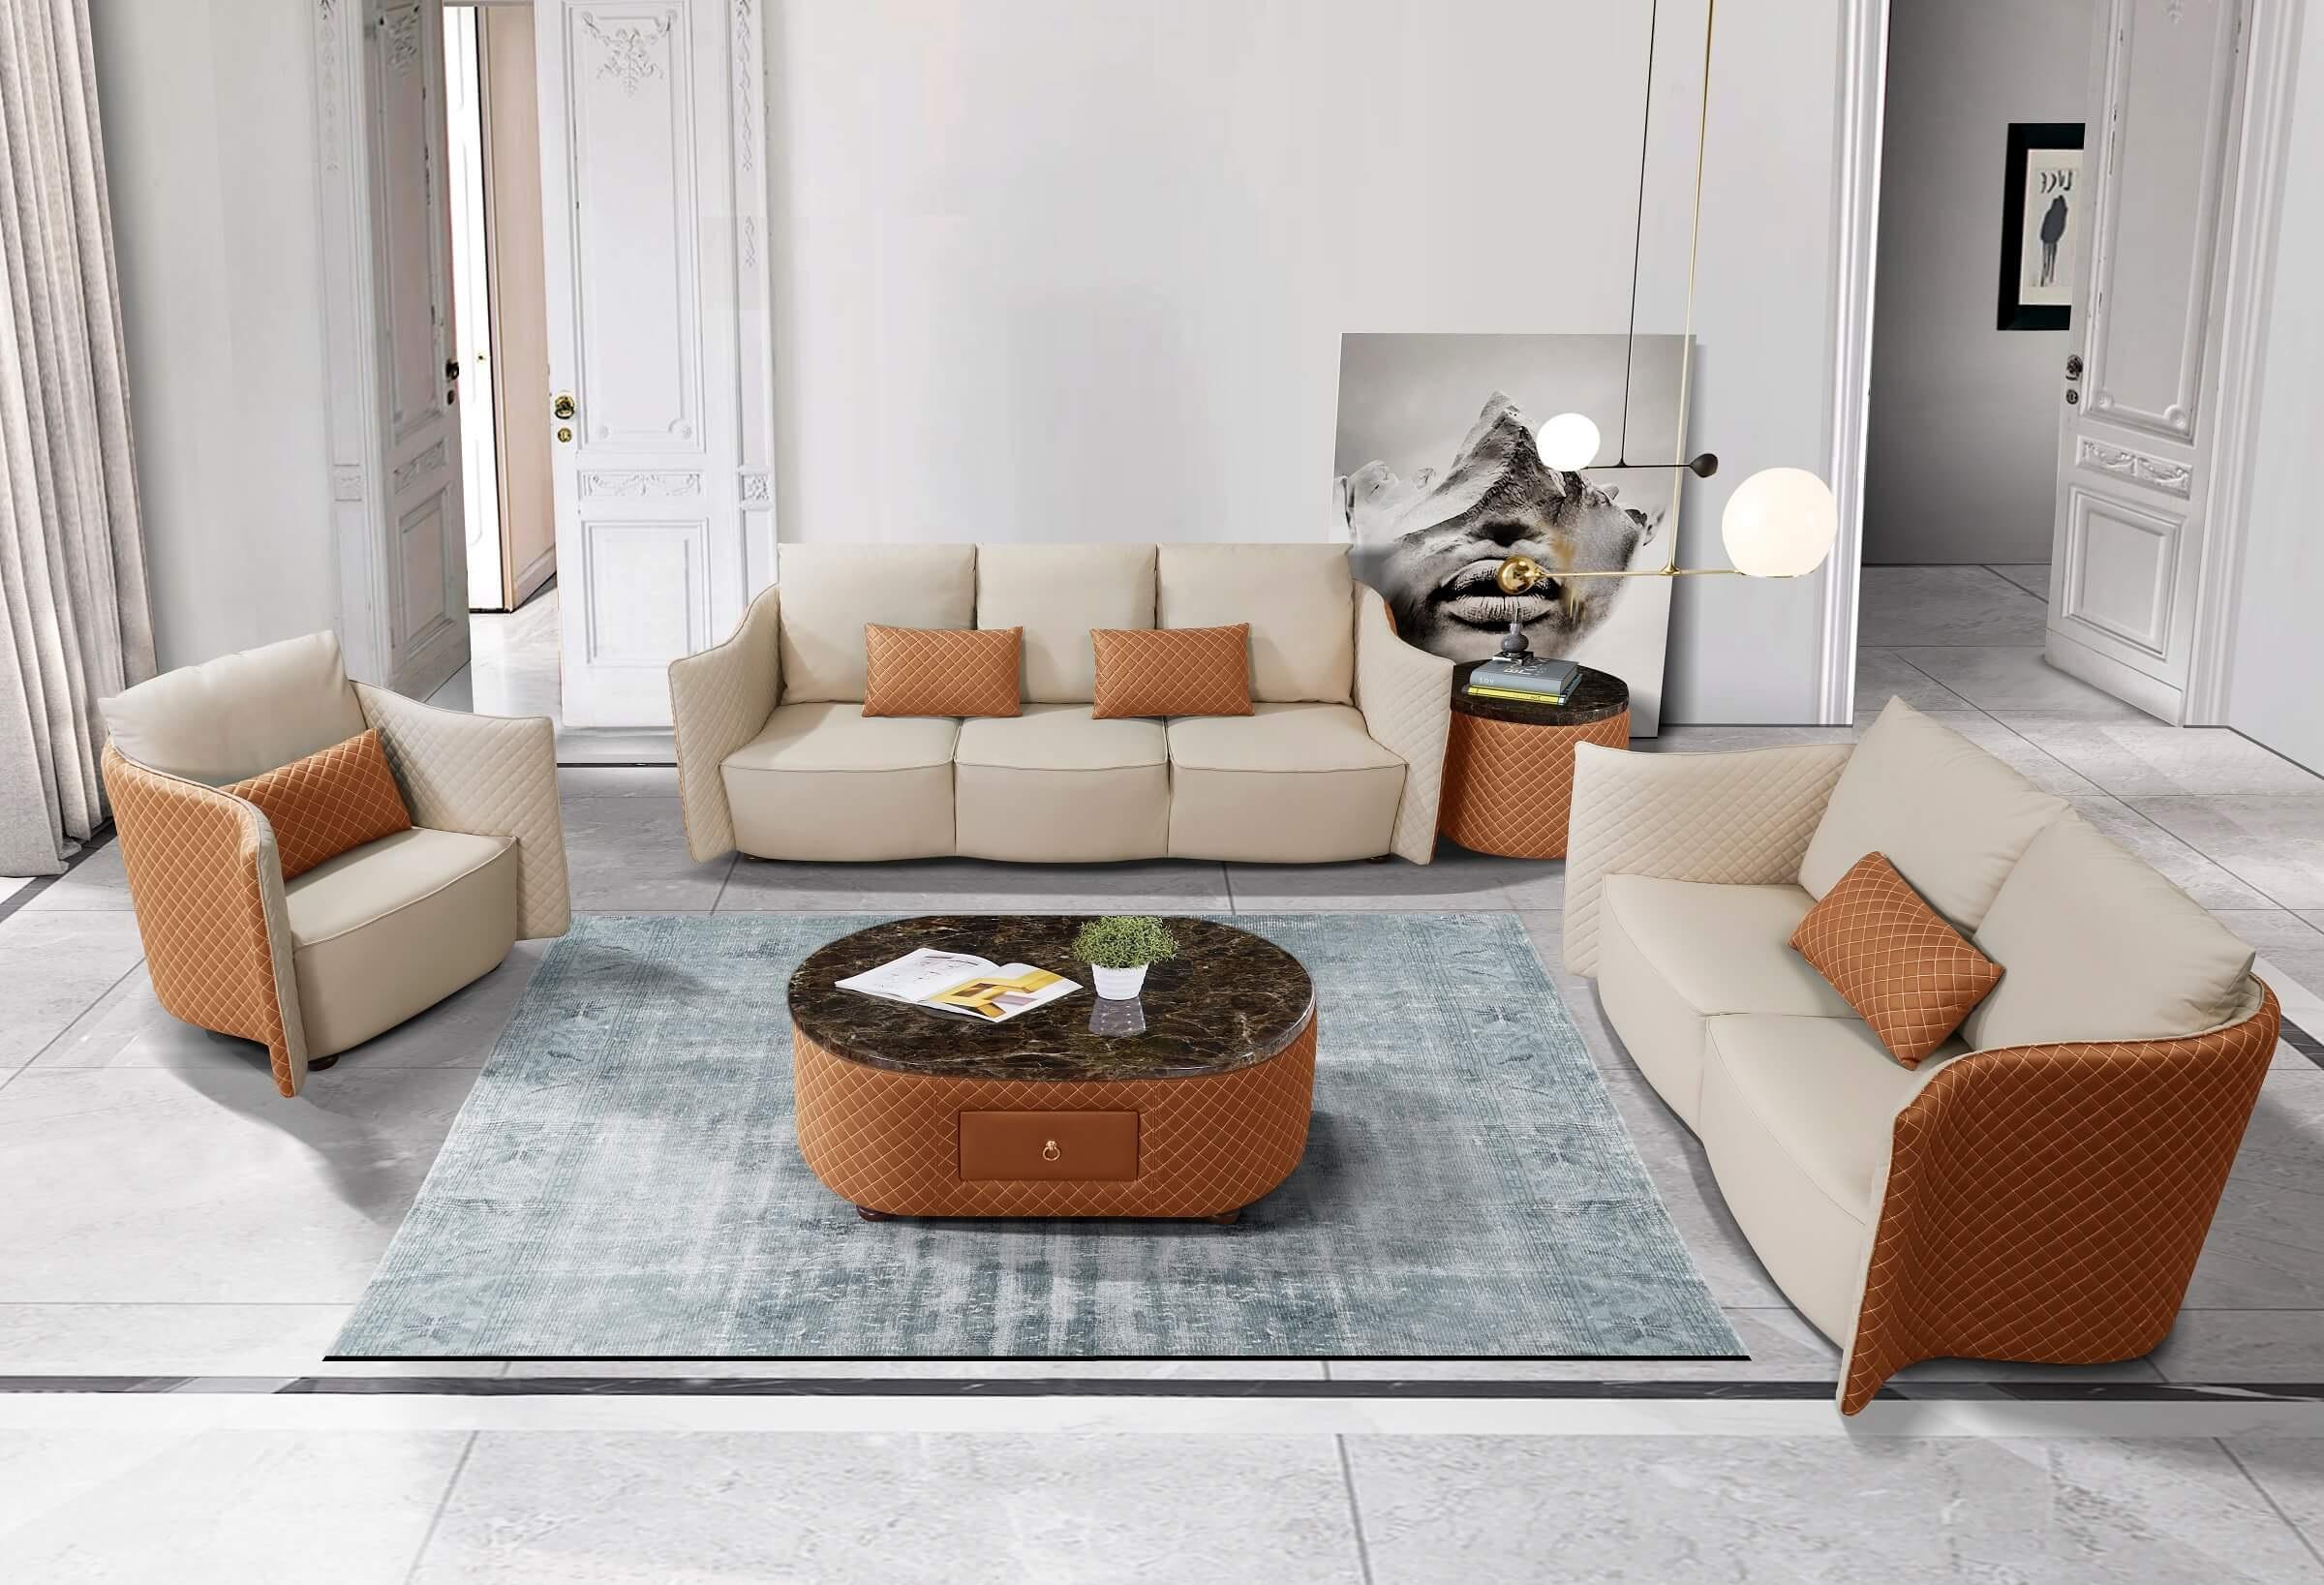 

    
Luxury Italian Leather Beige & Orange Sofa Set 3Pcs MAKASSAR EUROPEAN FURNITURE
